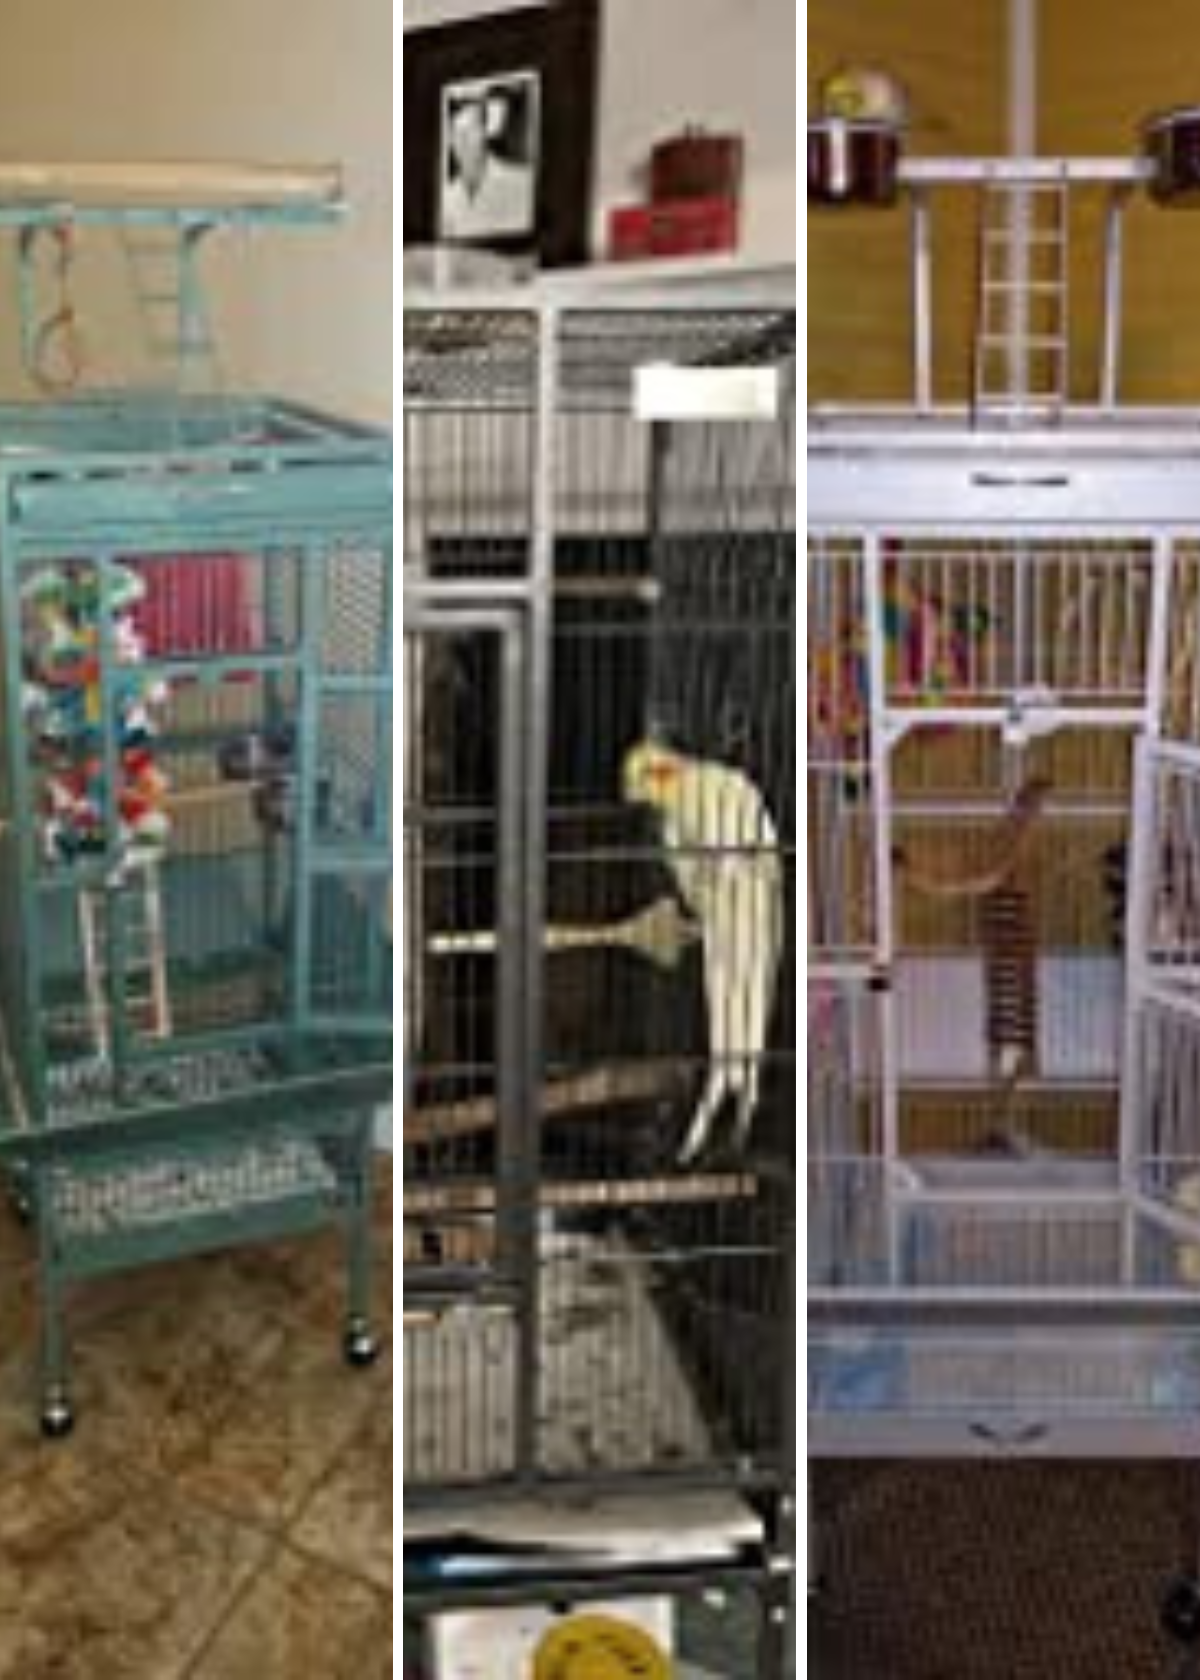 Best Bird Cages